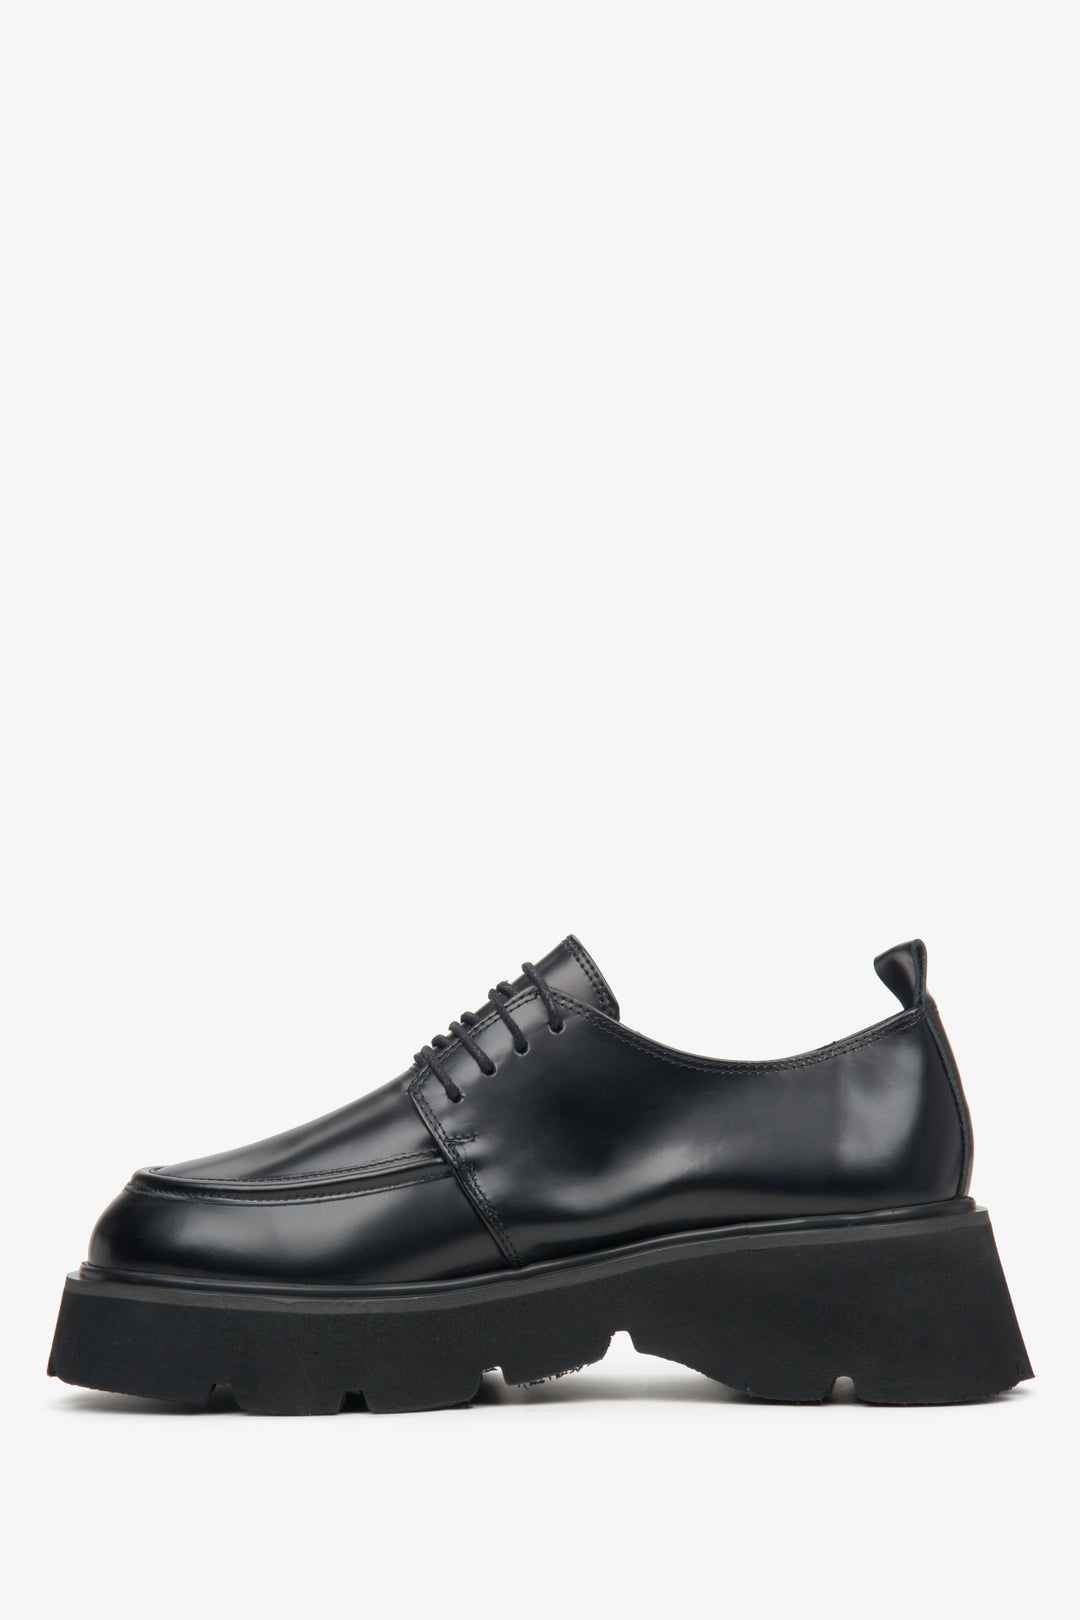 Lace-up women's black shoes by Estro - shoe profile.